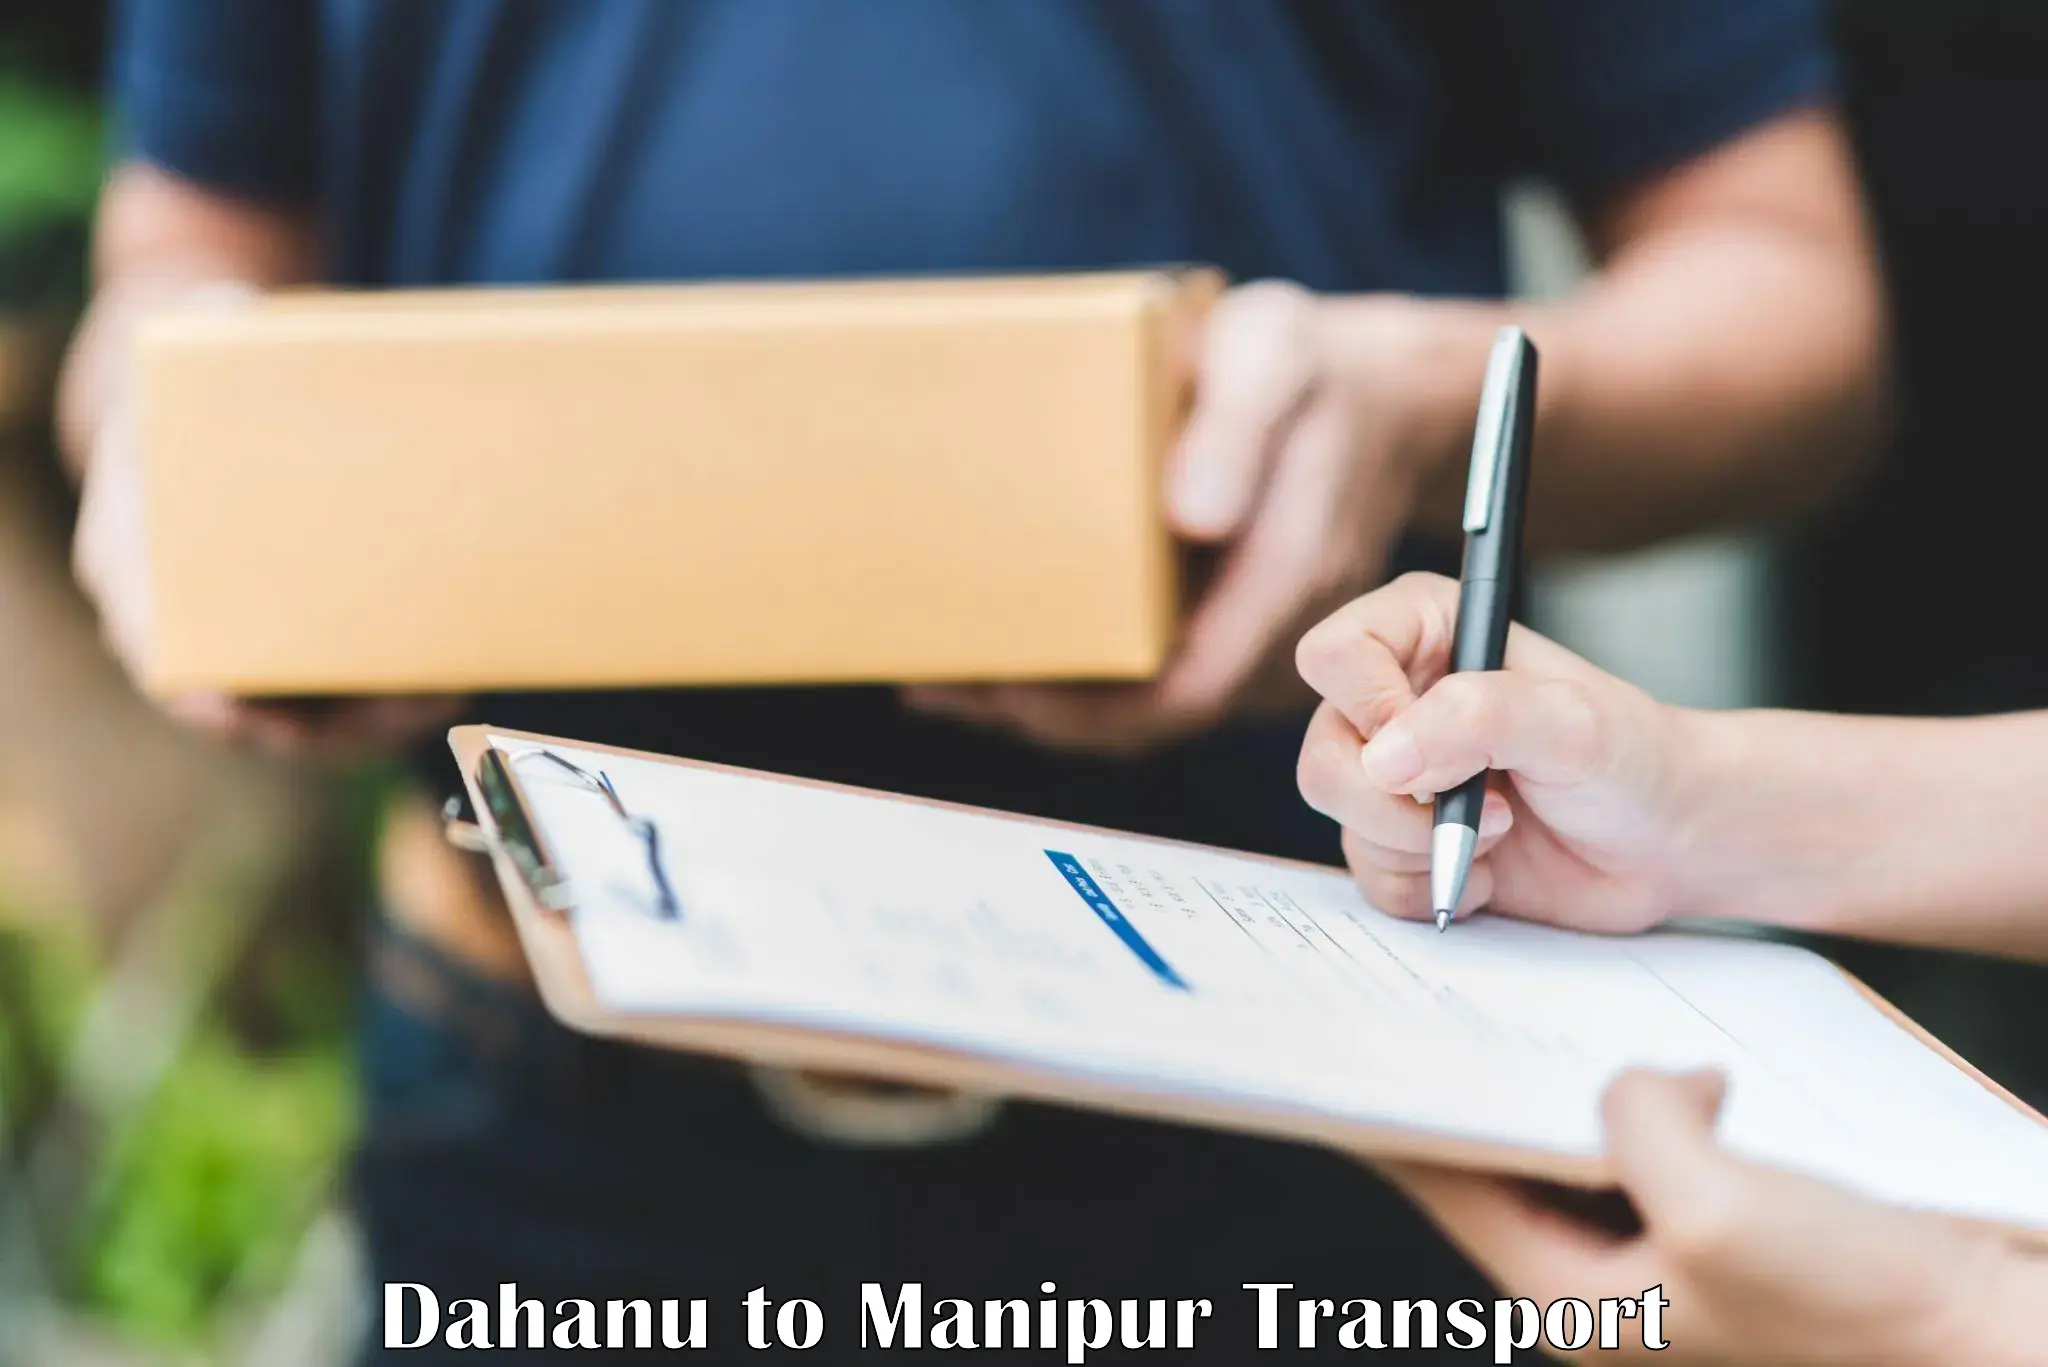 Online transport service Dahanu to Chandel